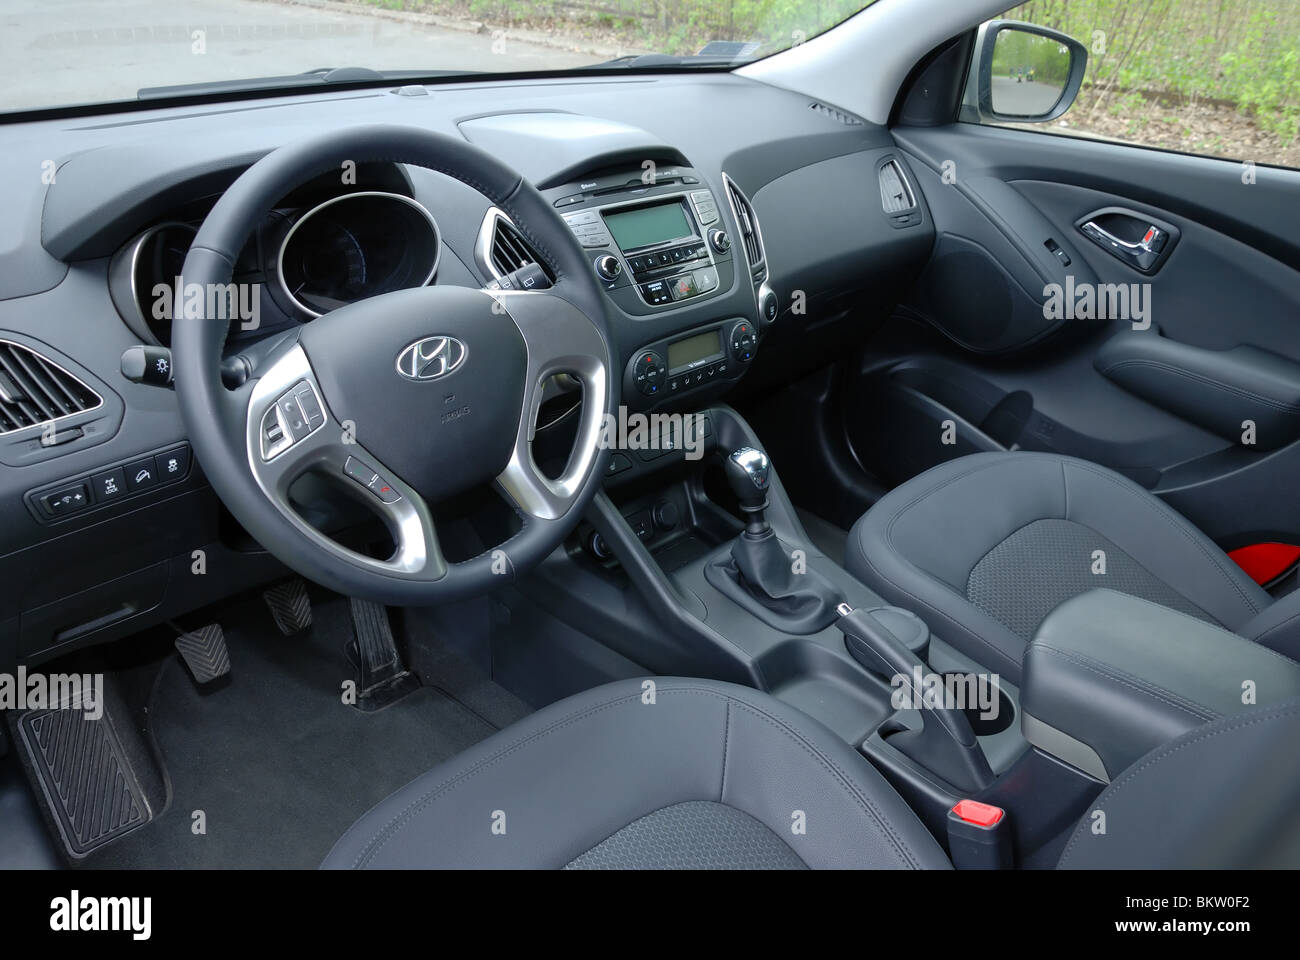 Hyundai ix35 immagini e fotografie stock ad alta risoluzione - Alamy